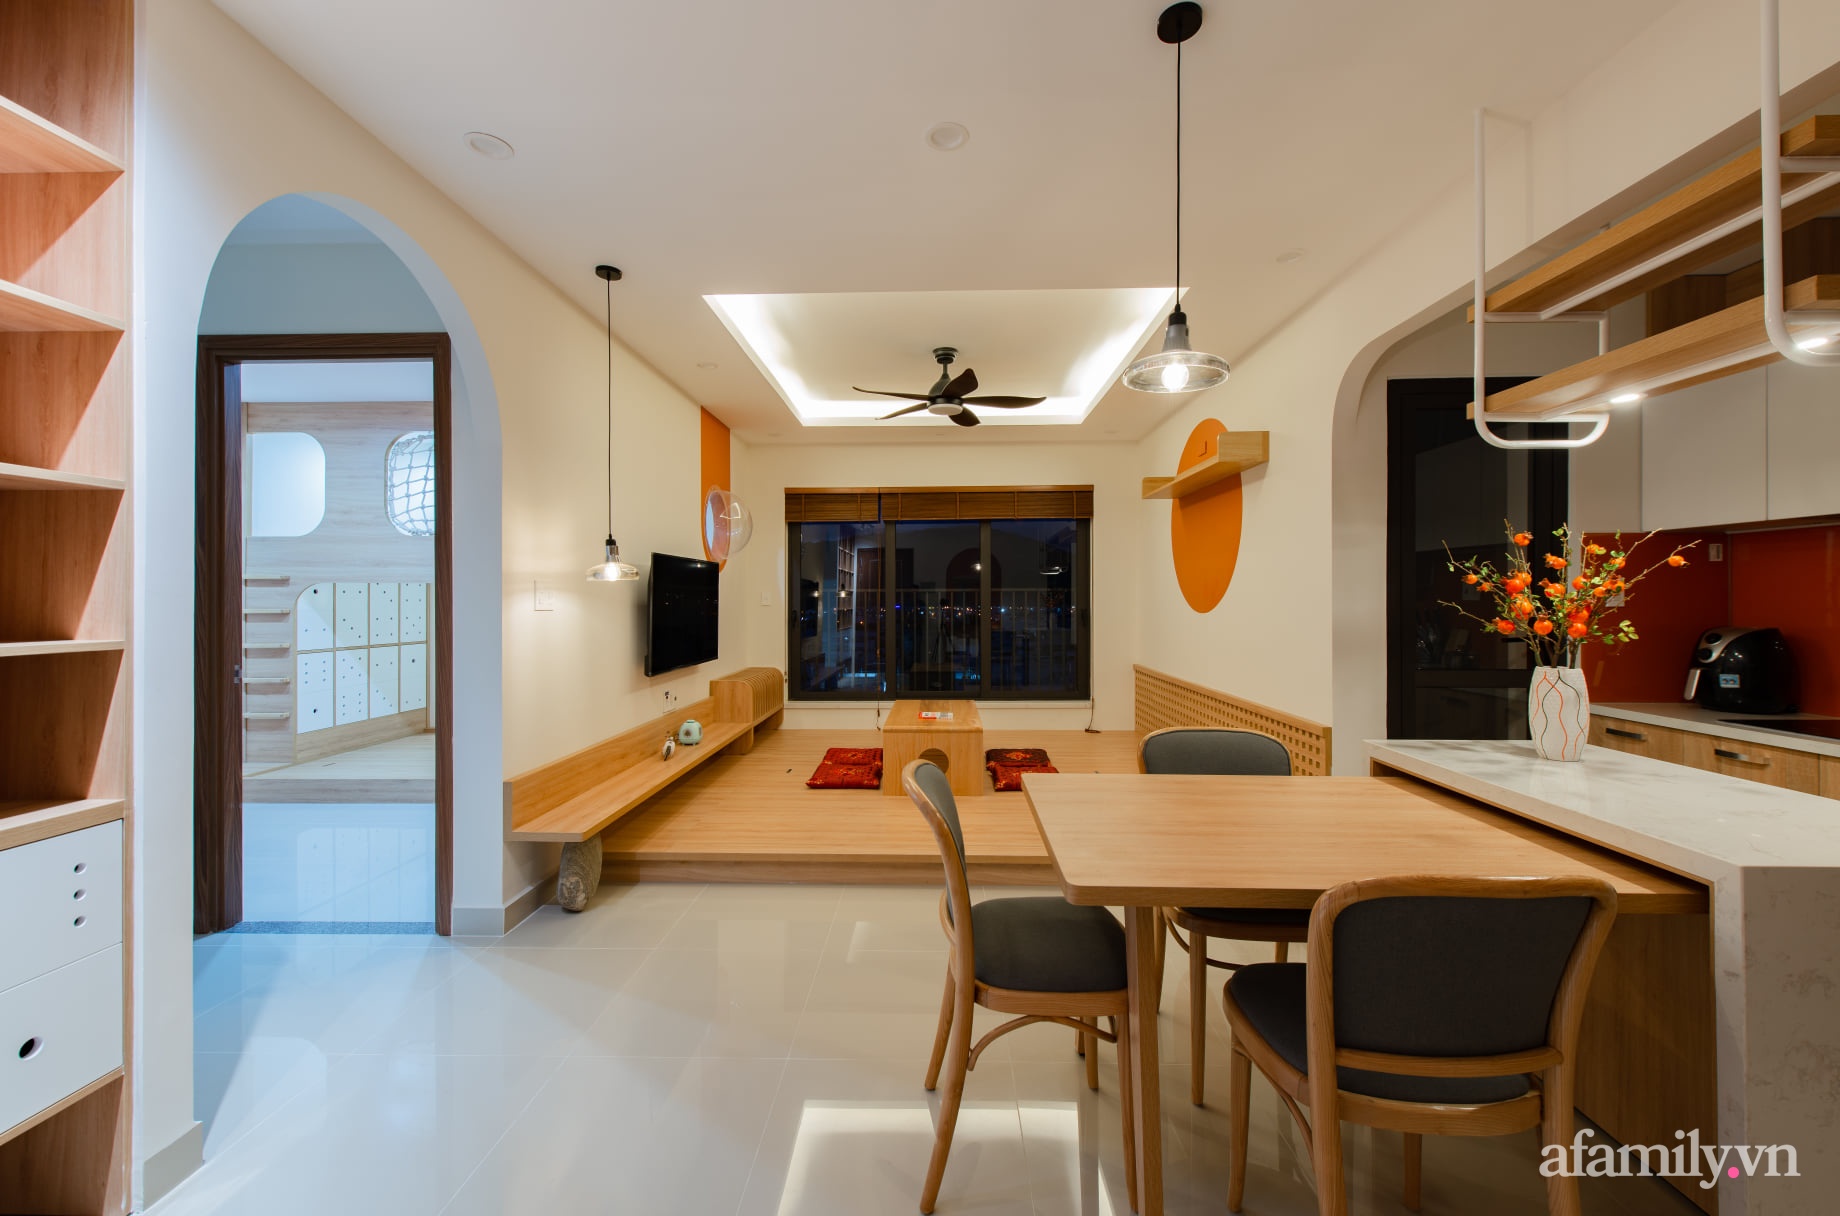 Căn hộ 78m² với tông cam đất ngọt ngào cùng đường cong mềm mại mang hơi hướng phong cách Nhật ở Nha Trang - Ảnh 3.